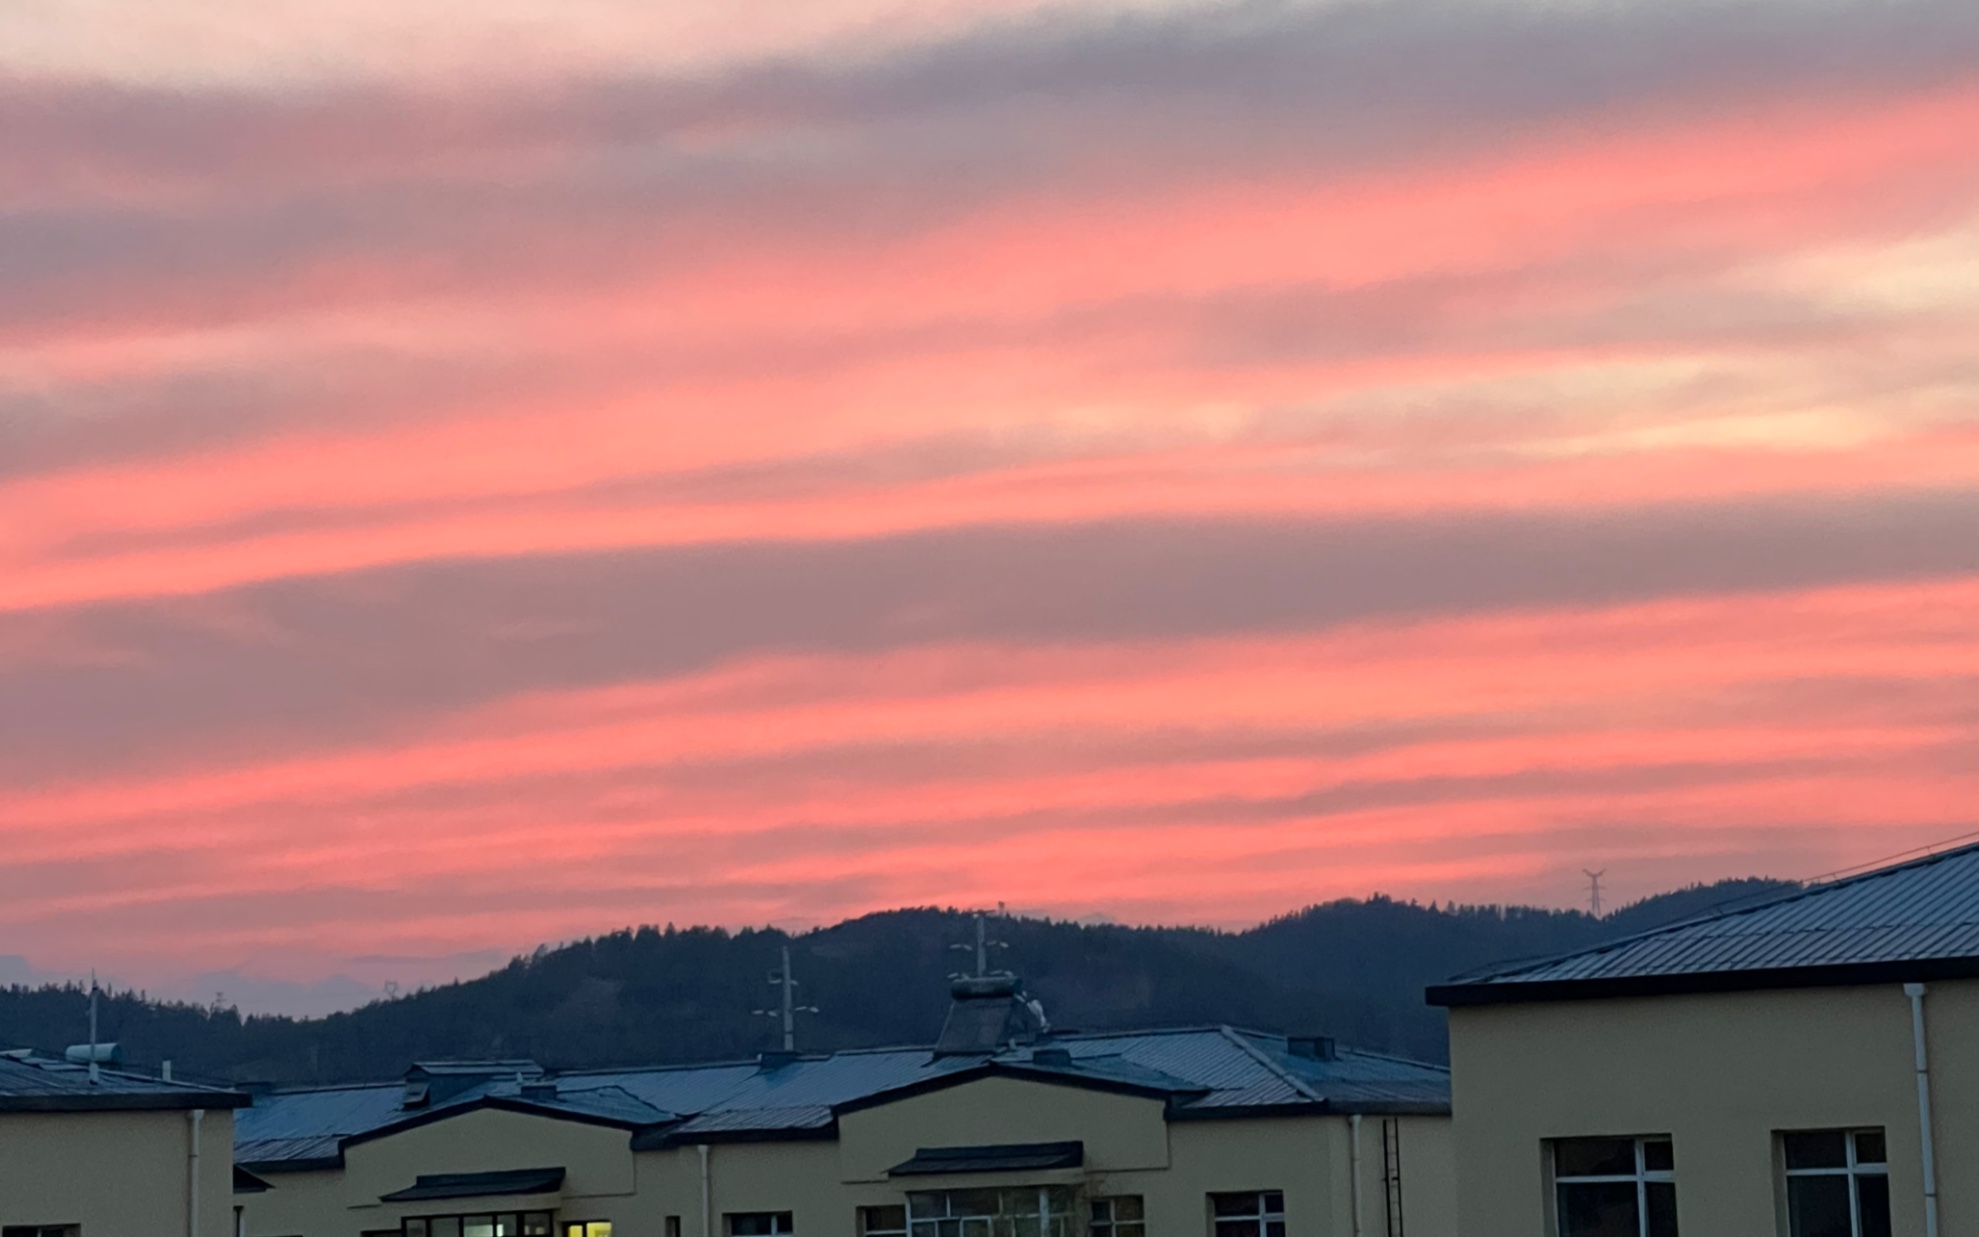 夕阳的照片 粉色图片